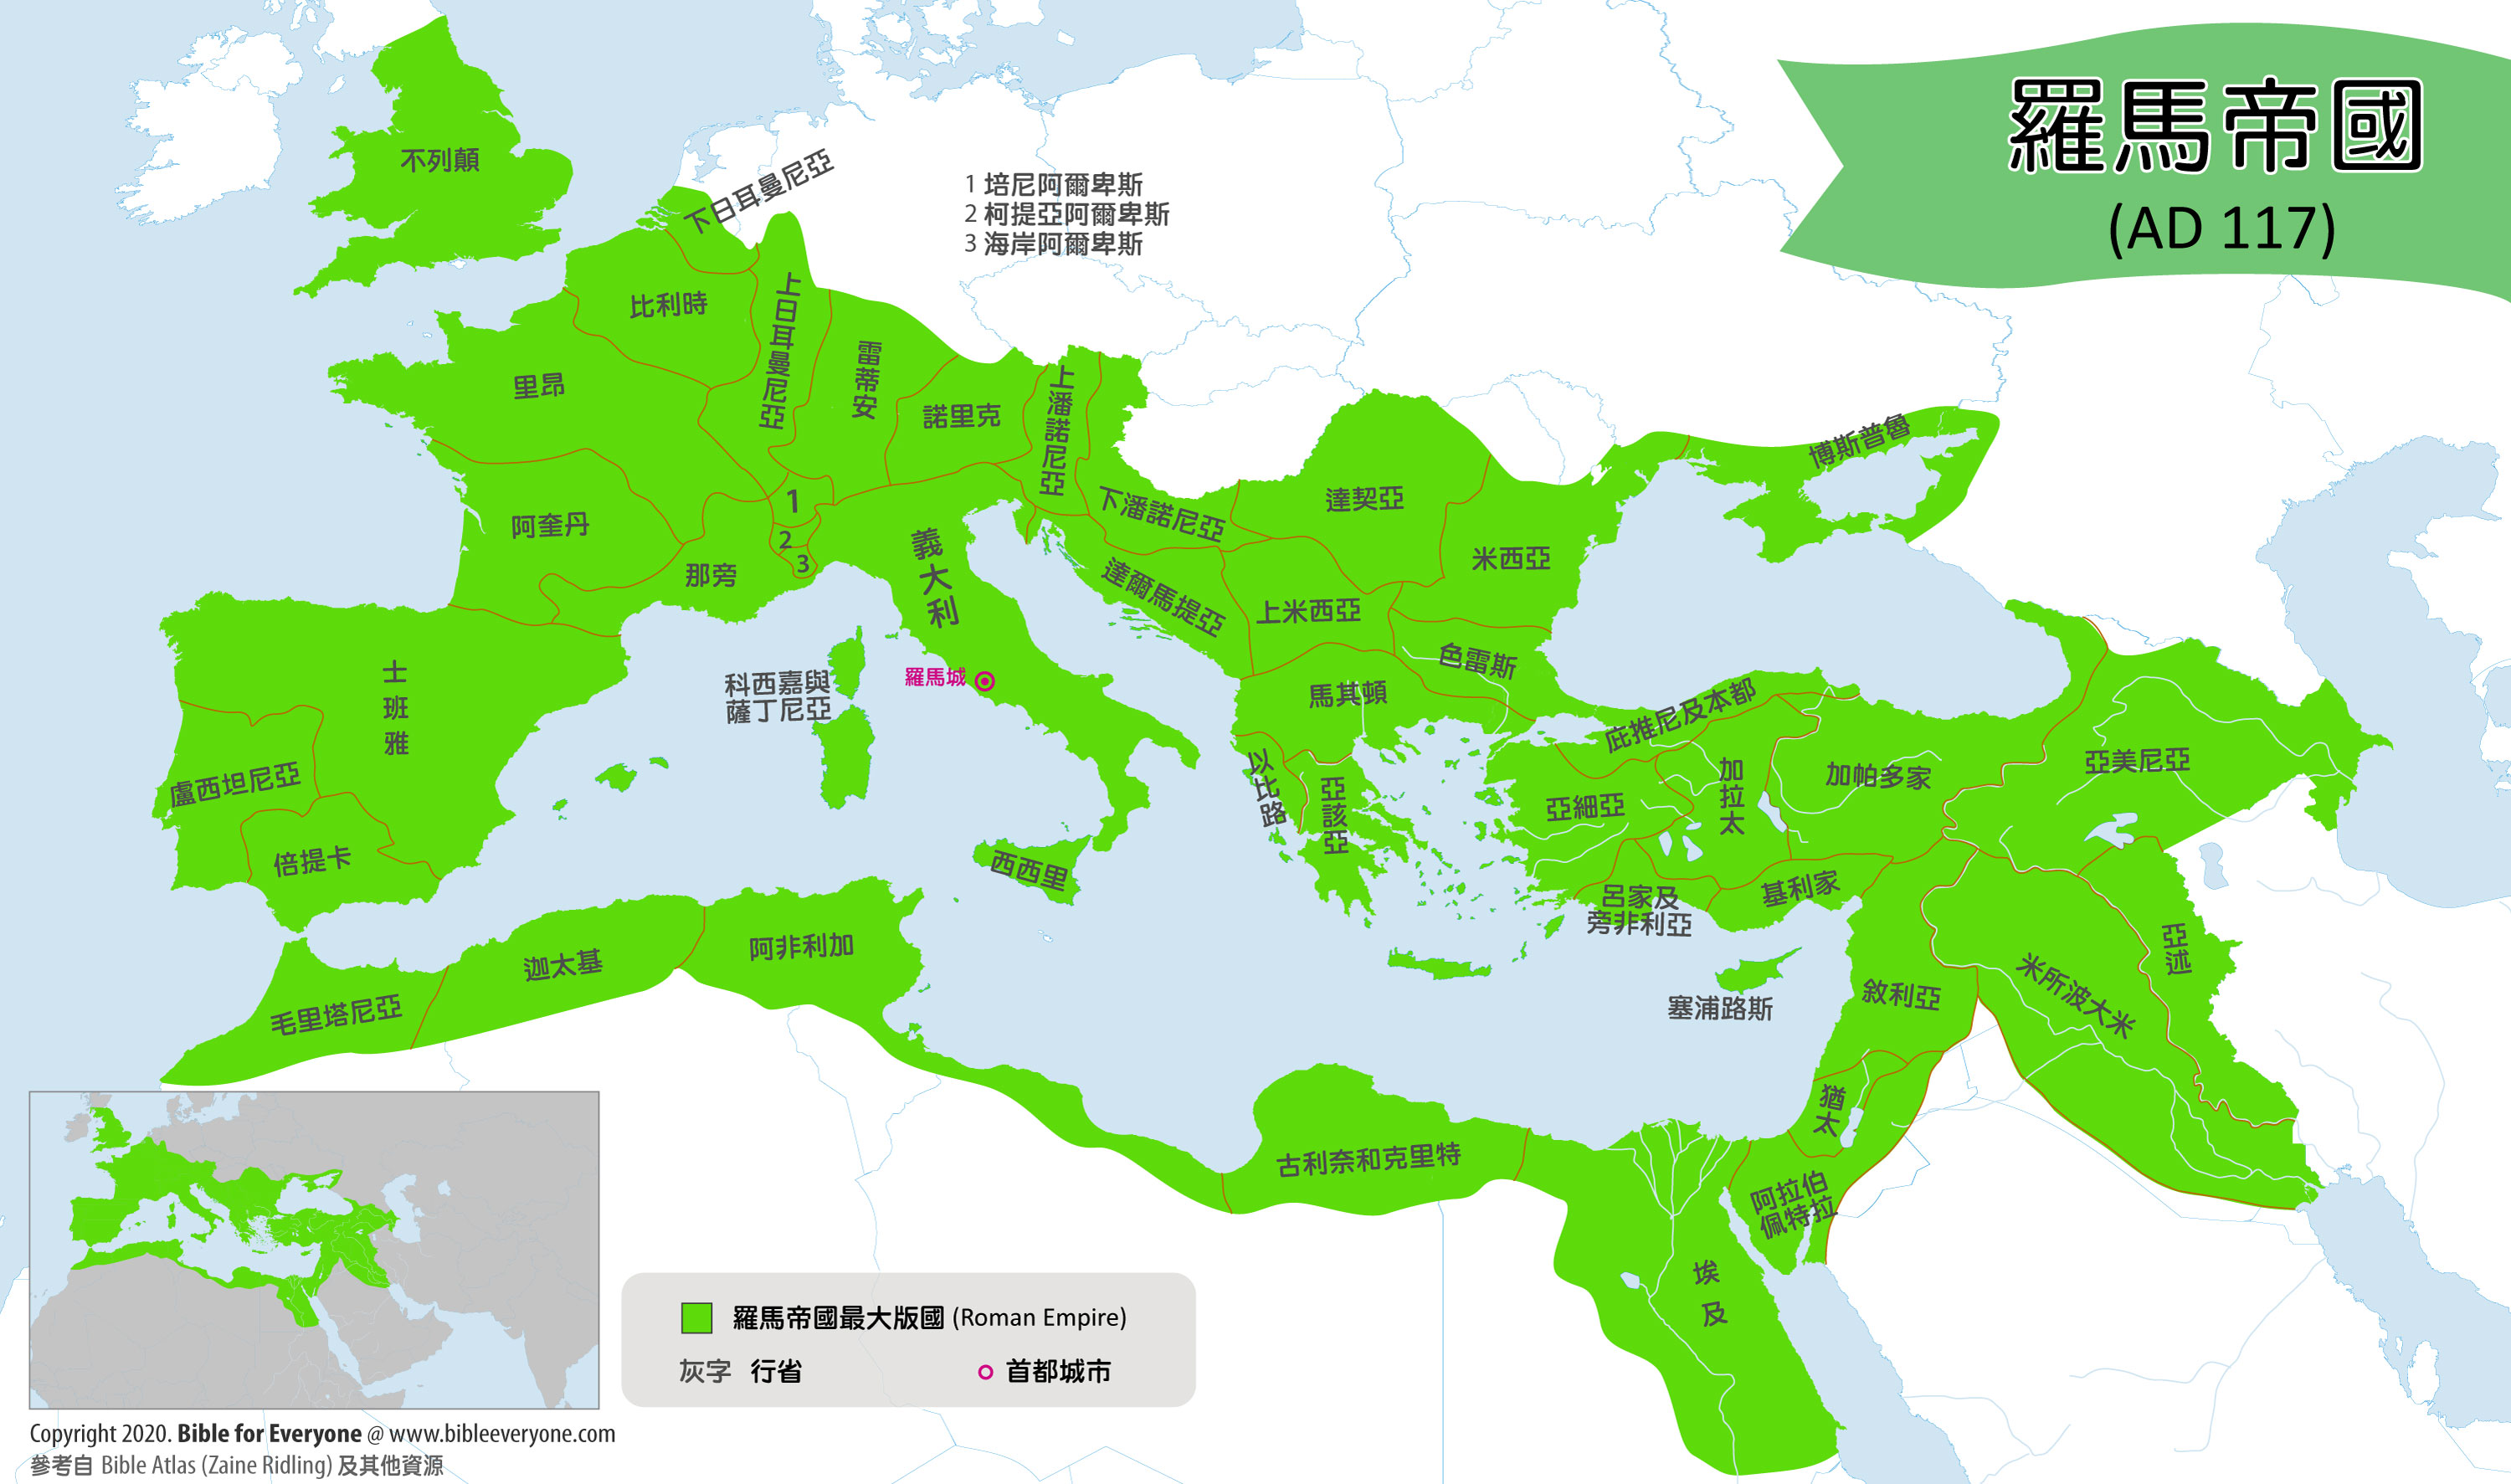 聖經 羅馬帝國 版圖 地圖